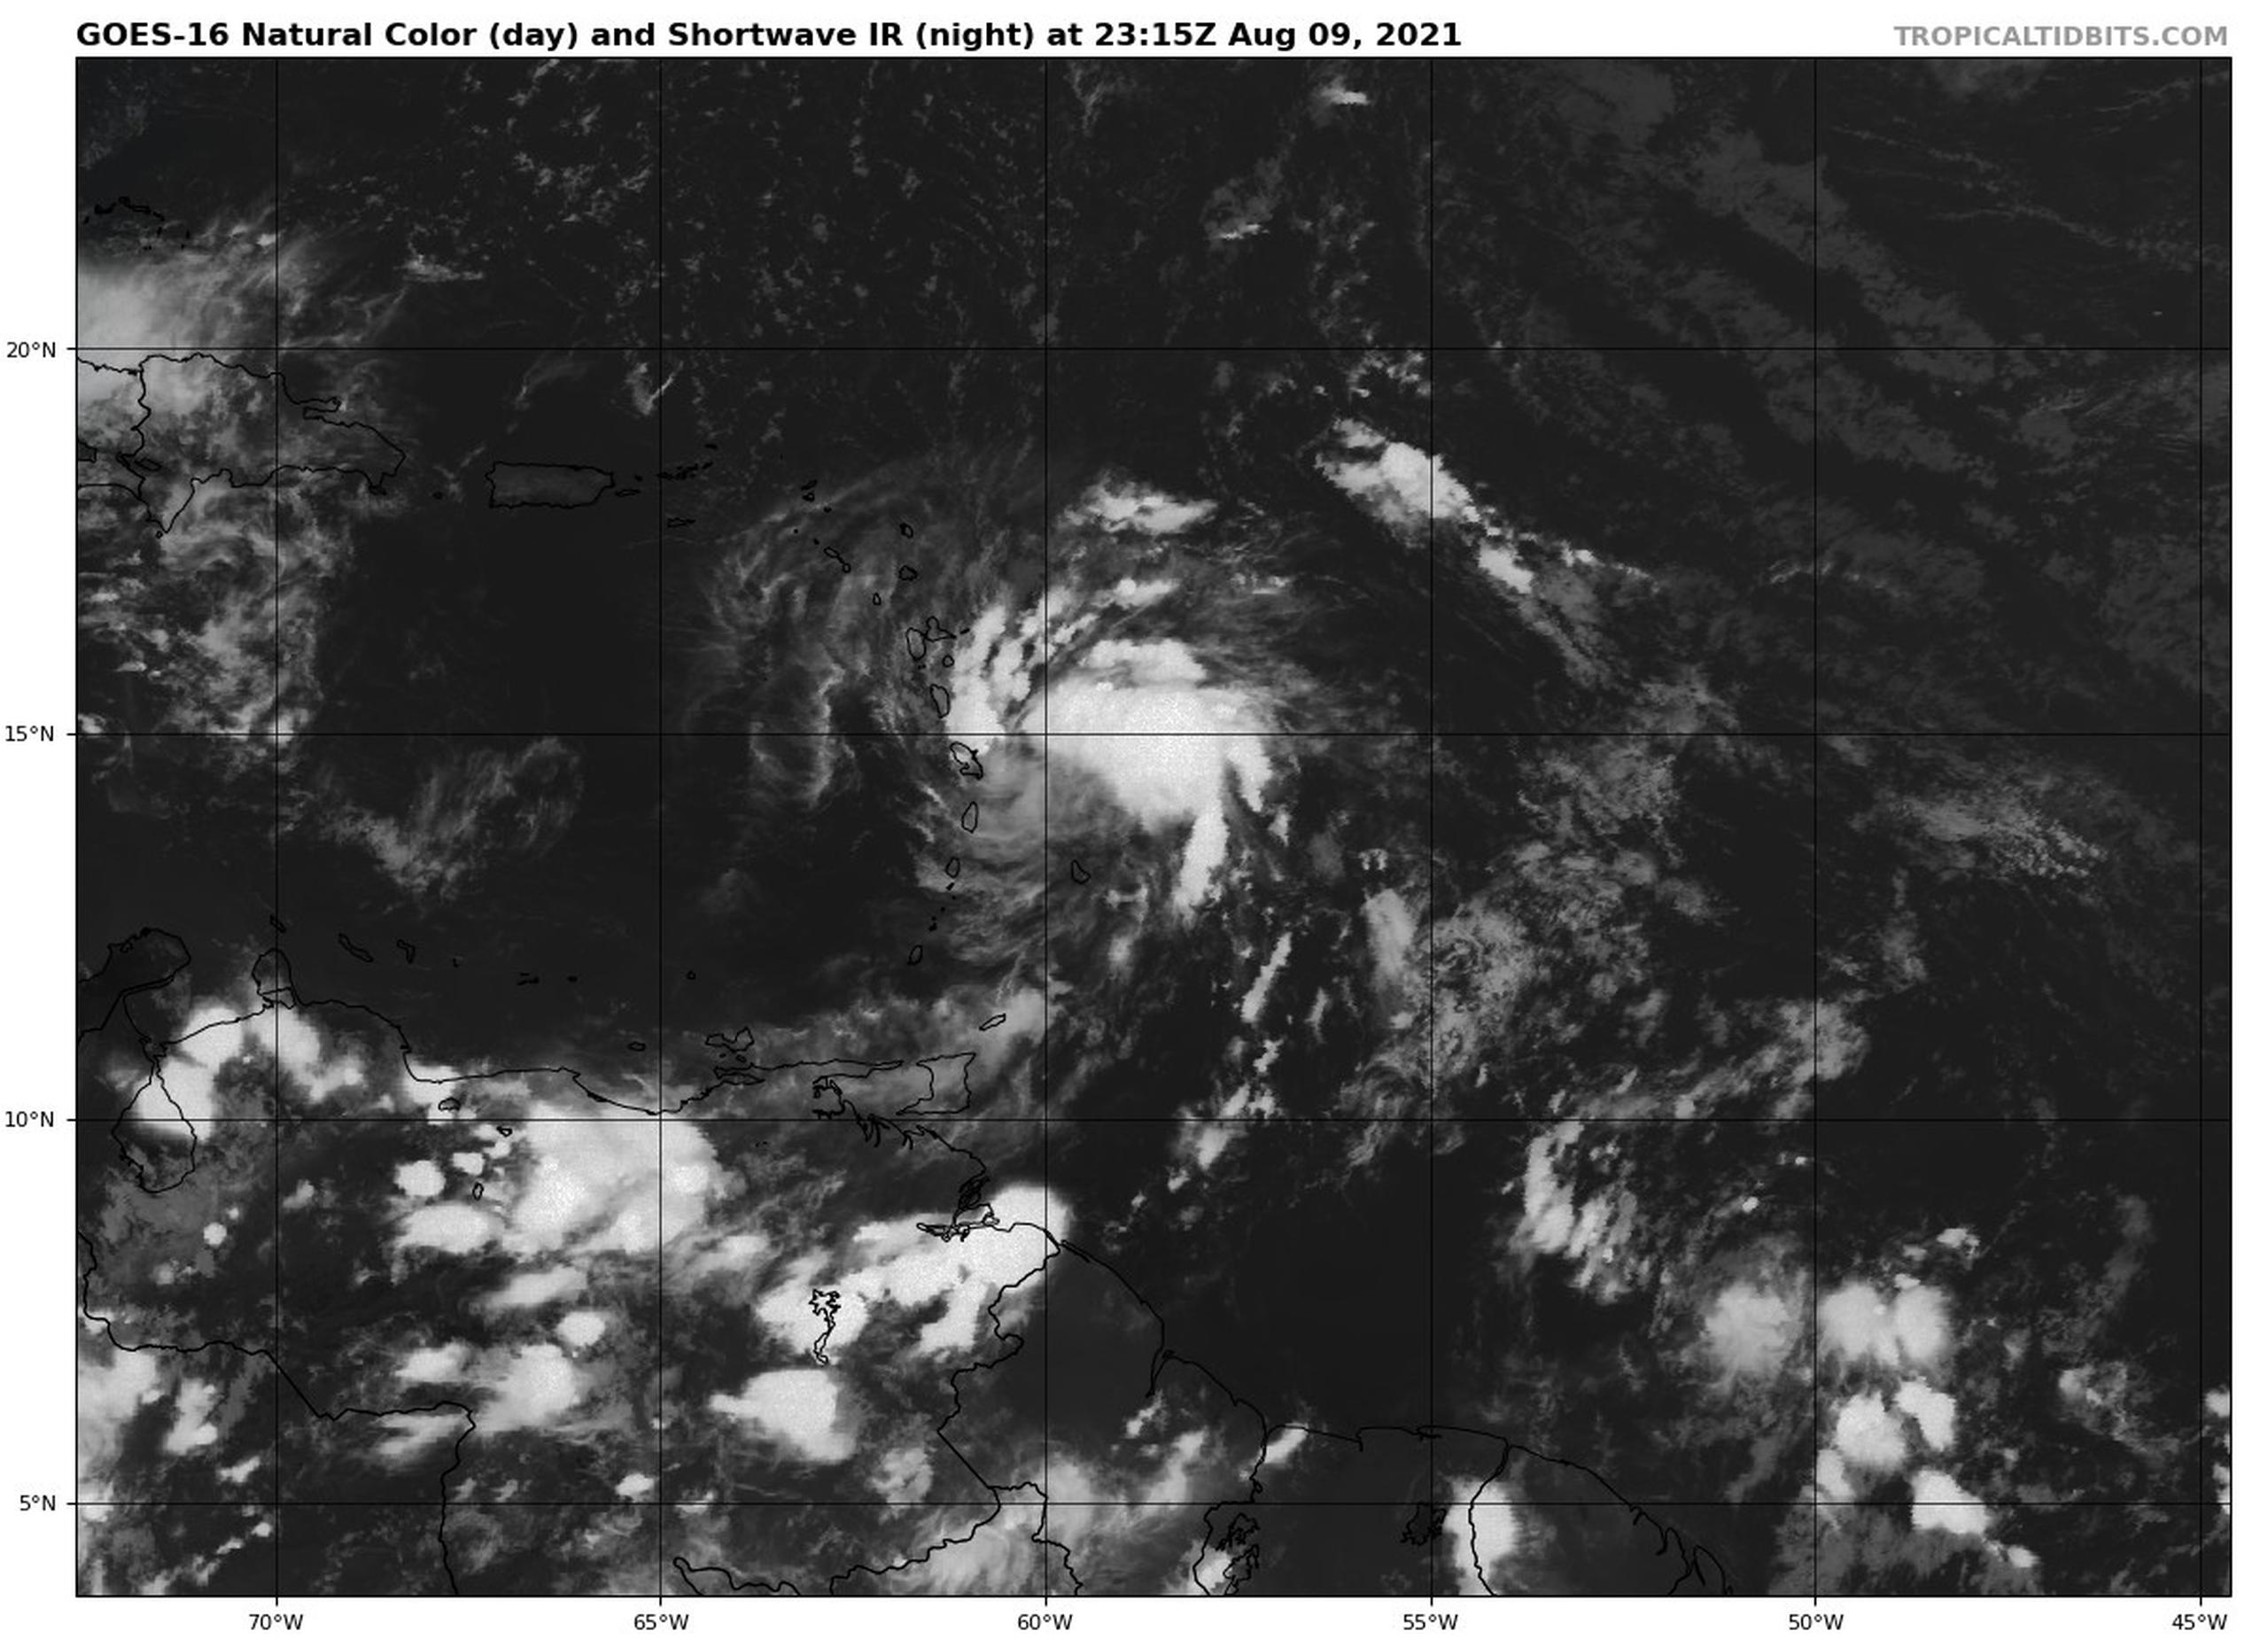 A las 8:00 de la noche el potencial de desarrollo ciclónico de la onda tropical aumentó a 90 por ciento. (NOAA)